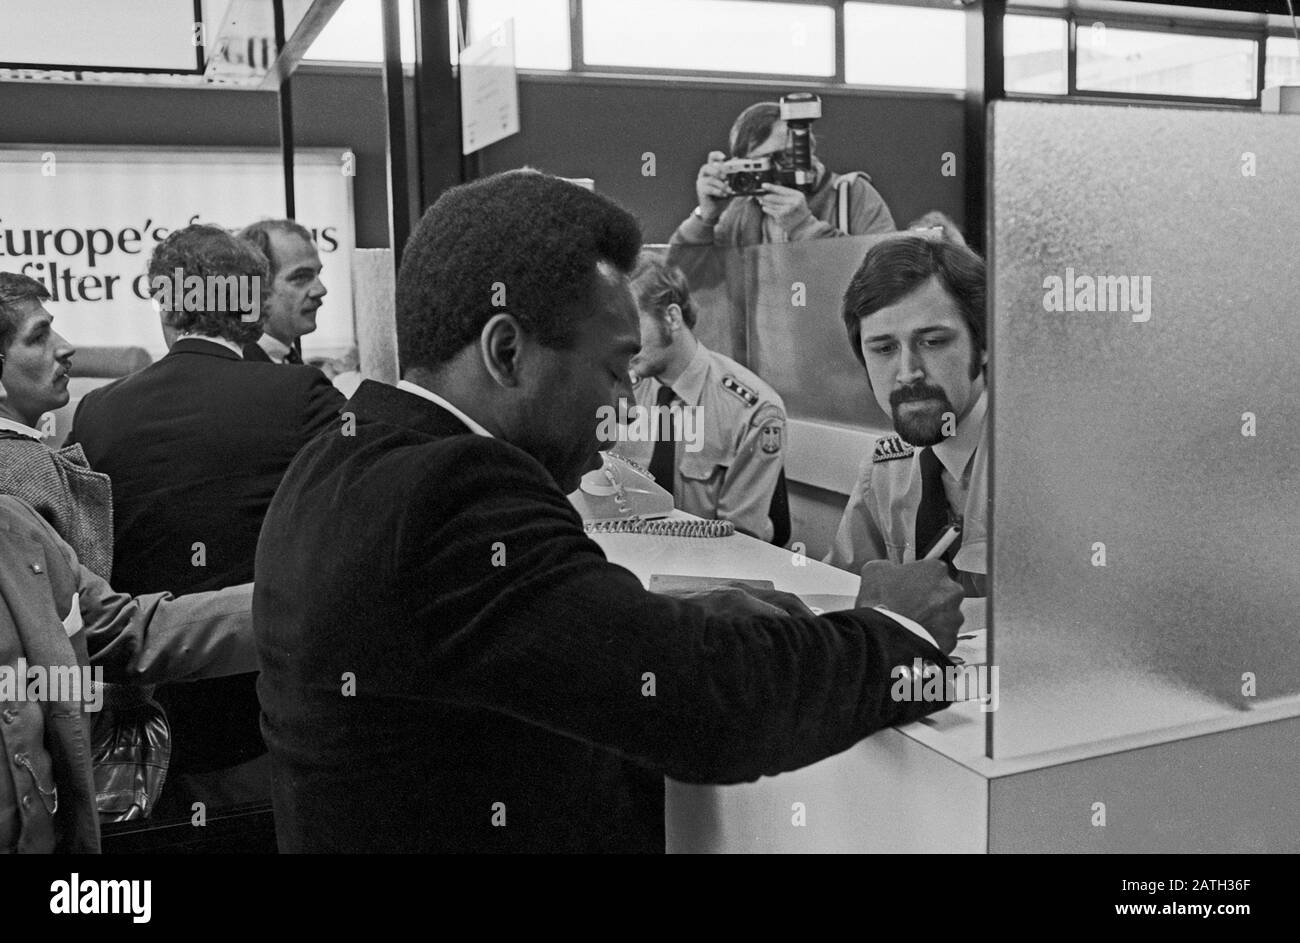 Pele, brasilianischer Fußballspieler, bei der Passkontrolle am Flughafen Hamburg, Deutschland 1981. Il calciatore brasiliano Pele ottiene il passaporto controllato dopo aver lasciato l'aereo Lufthansa all'aeroporto di Amburgo, Germania 1981. Foto Stock